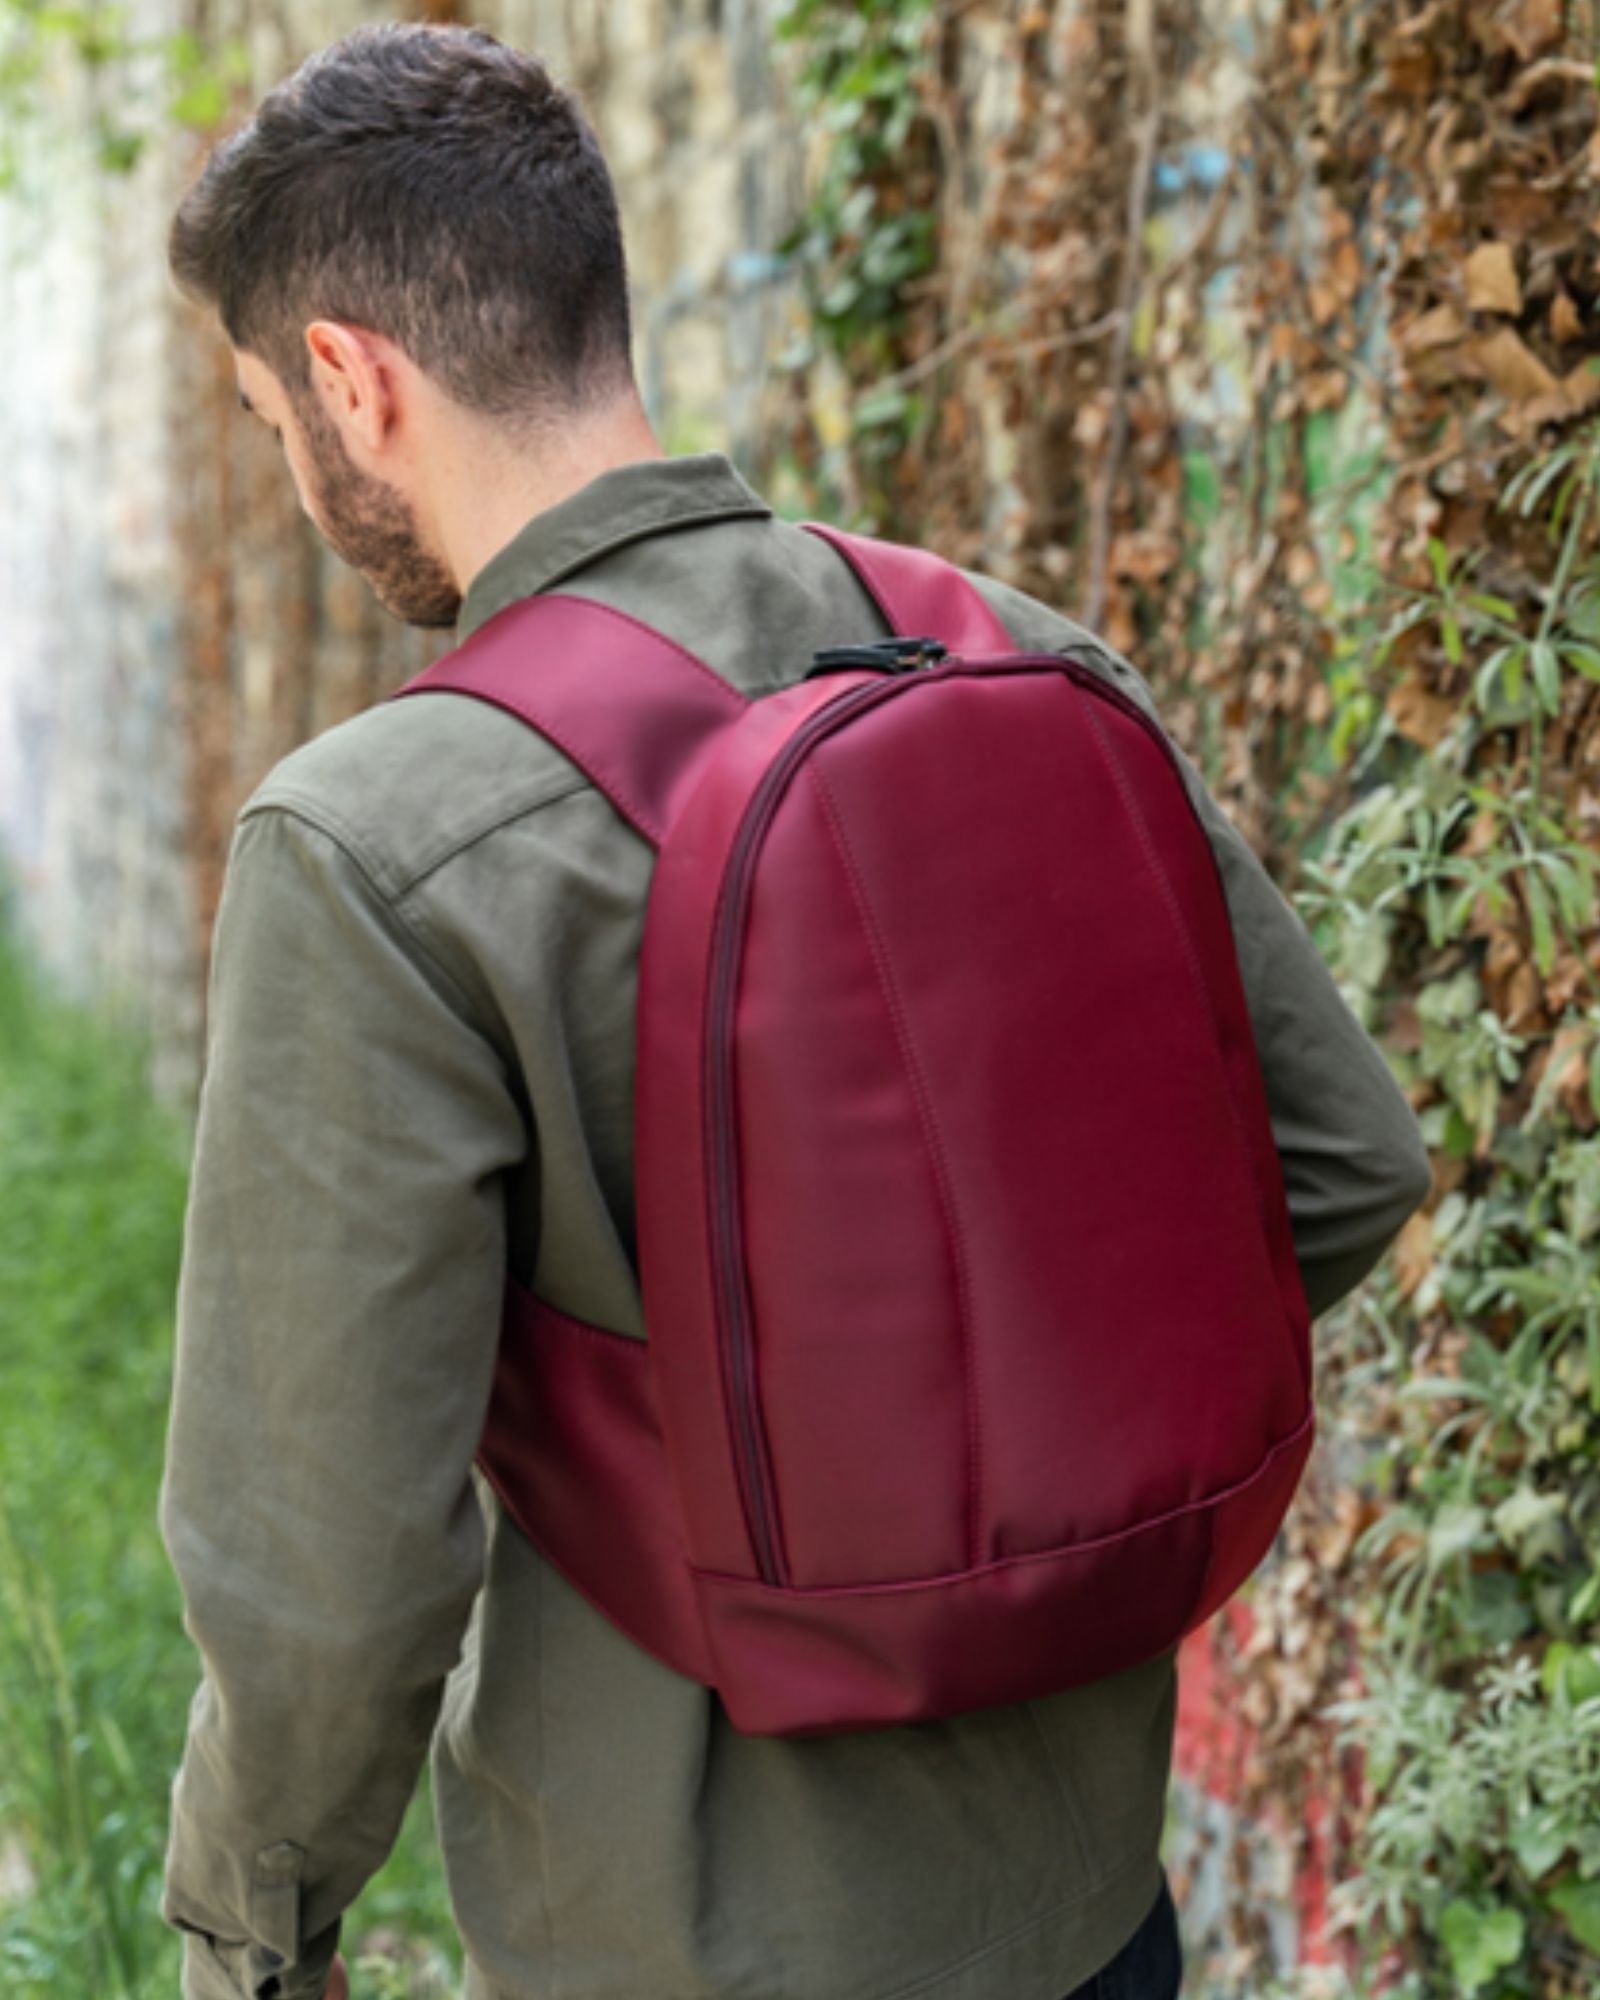 ARSAYO - ARSAYO Nomad Backpack | Burgundy Red